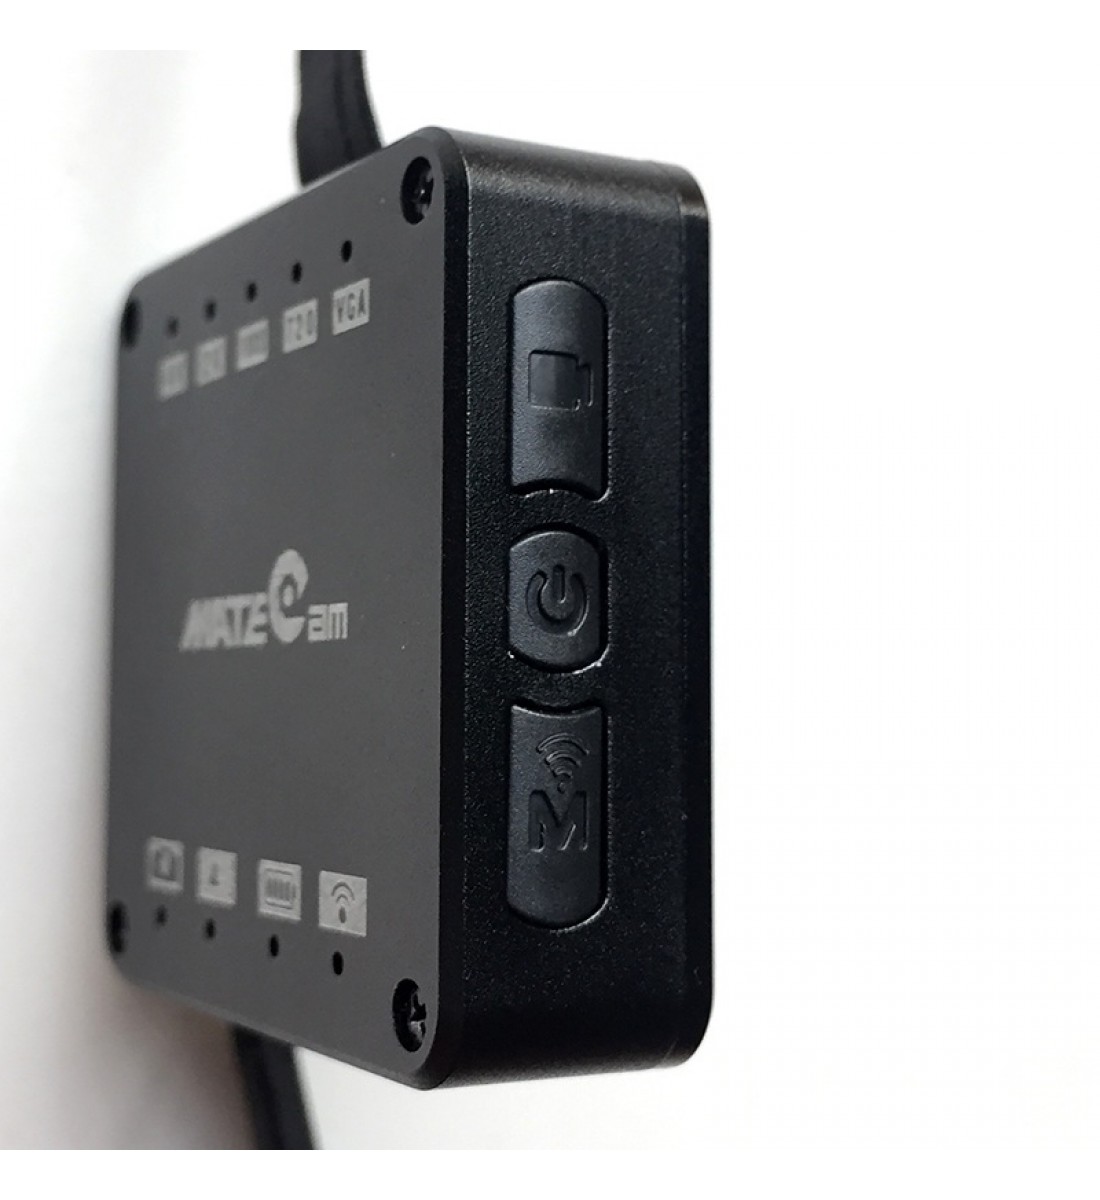 4K Real Ultra HD WiFi Versteckte Spionagekamera Minikamera Drahtlose Bewegungserkennung Nanny Cam Sicherheitssystem Video Remote View Kamera Monitor Baby Office Spion Cam App Camcorder Kind Mit 4000mAh Akku (6)